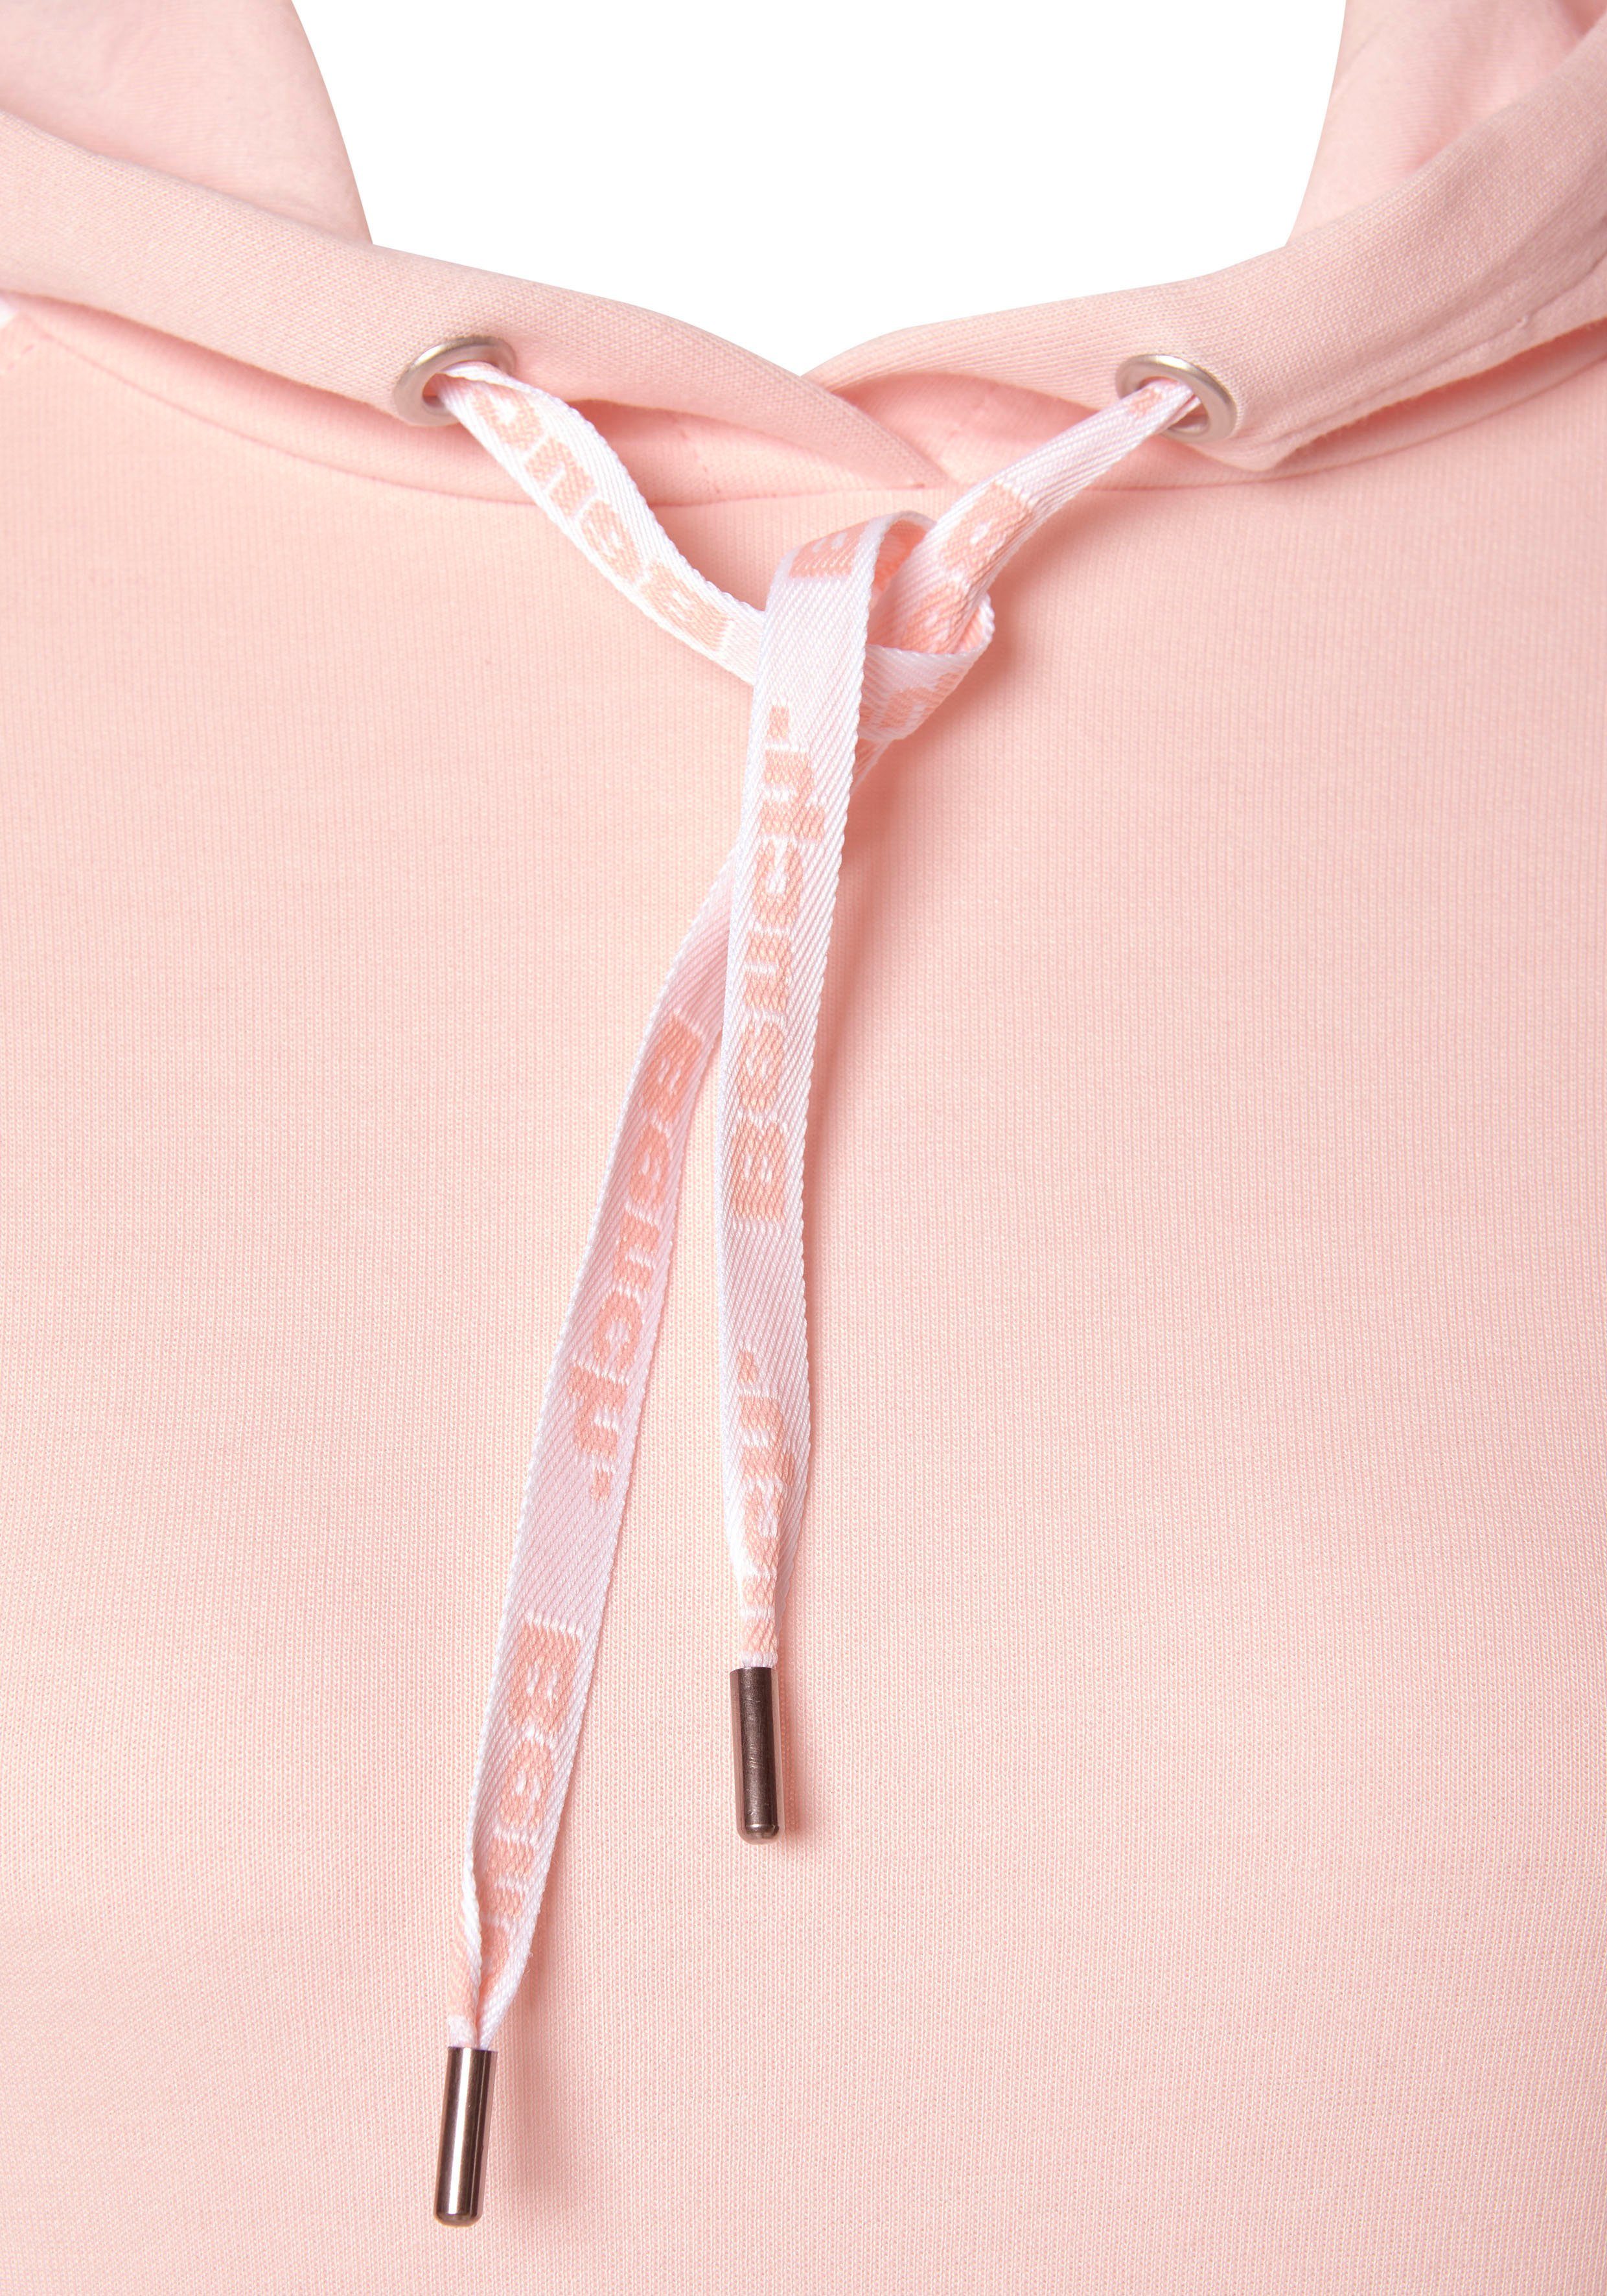 mit Kapuze Ärmeln abgesetzten weiß-rosa Sweatkleid Loungewear Bench. farblich und